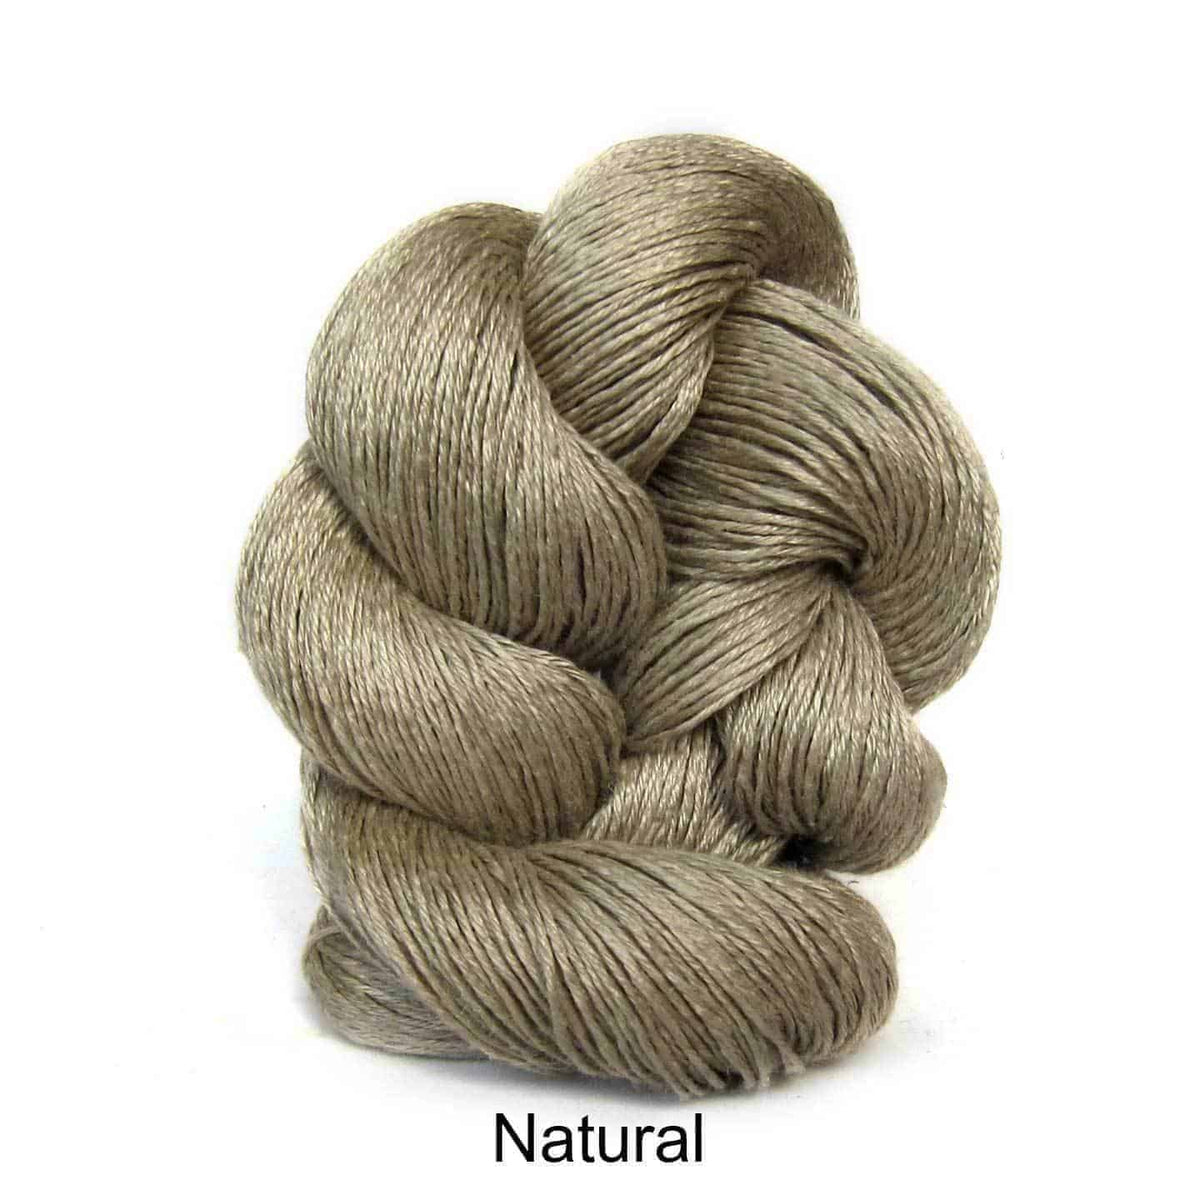 Euroflax Wet Spun Linen Yarn Natural 2364